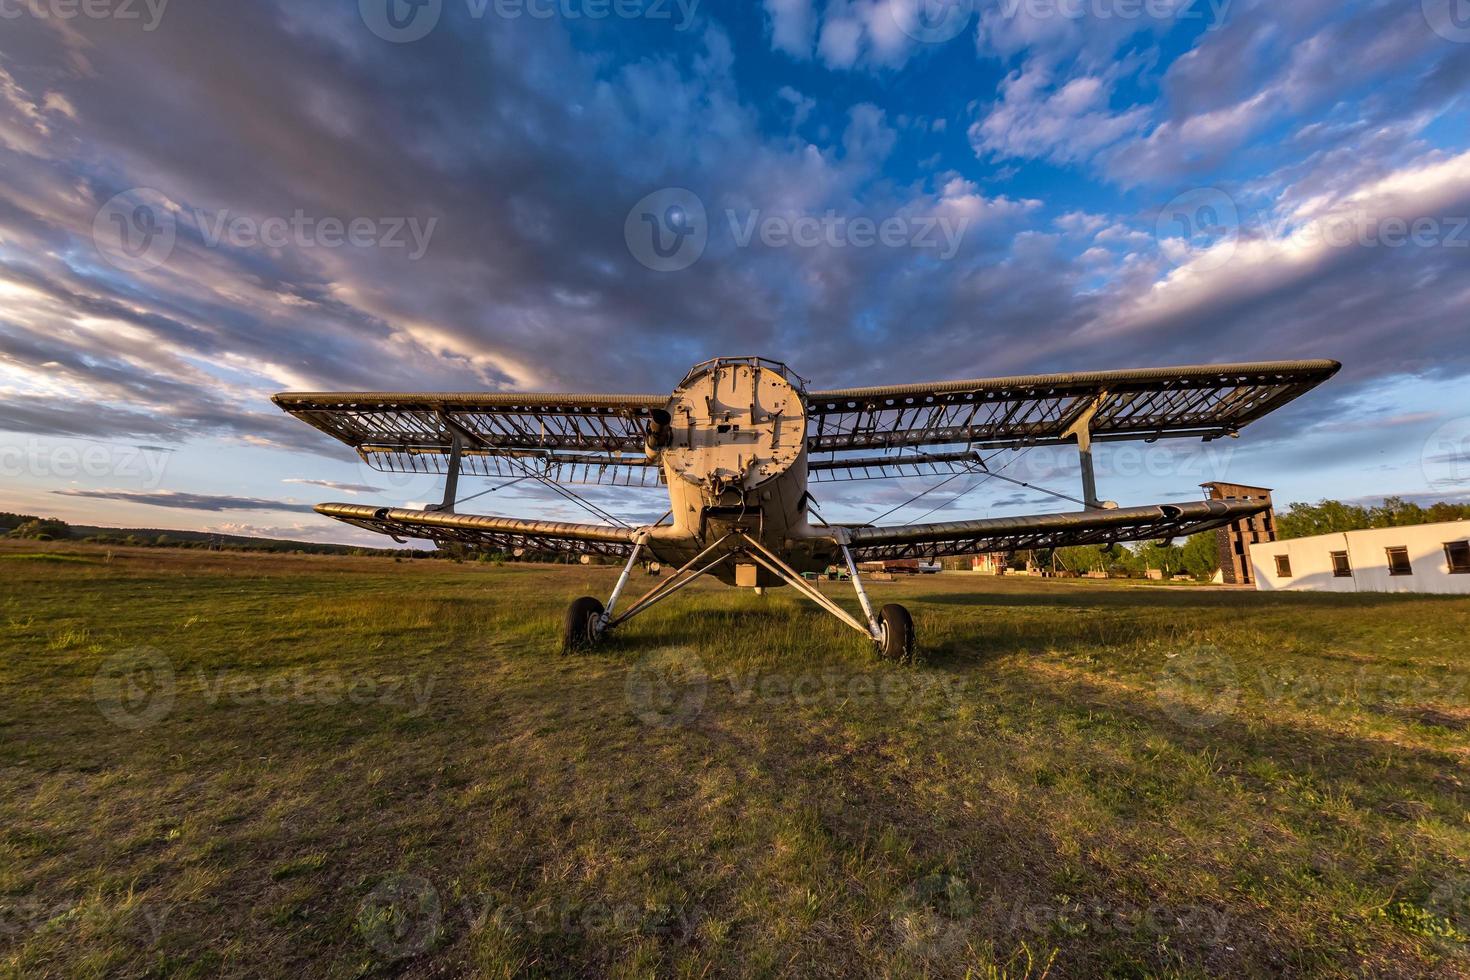 ancien avion détruit sur le terrain dans les rayons du soleil couchant avec de beaux nuages photo